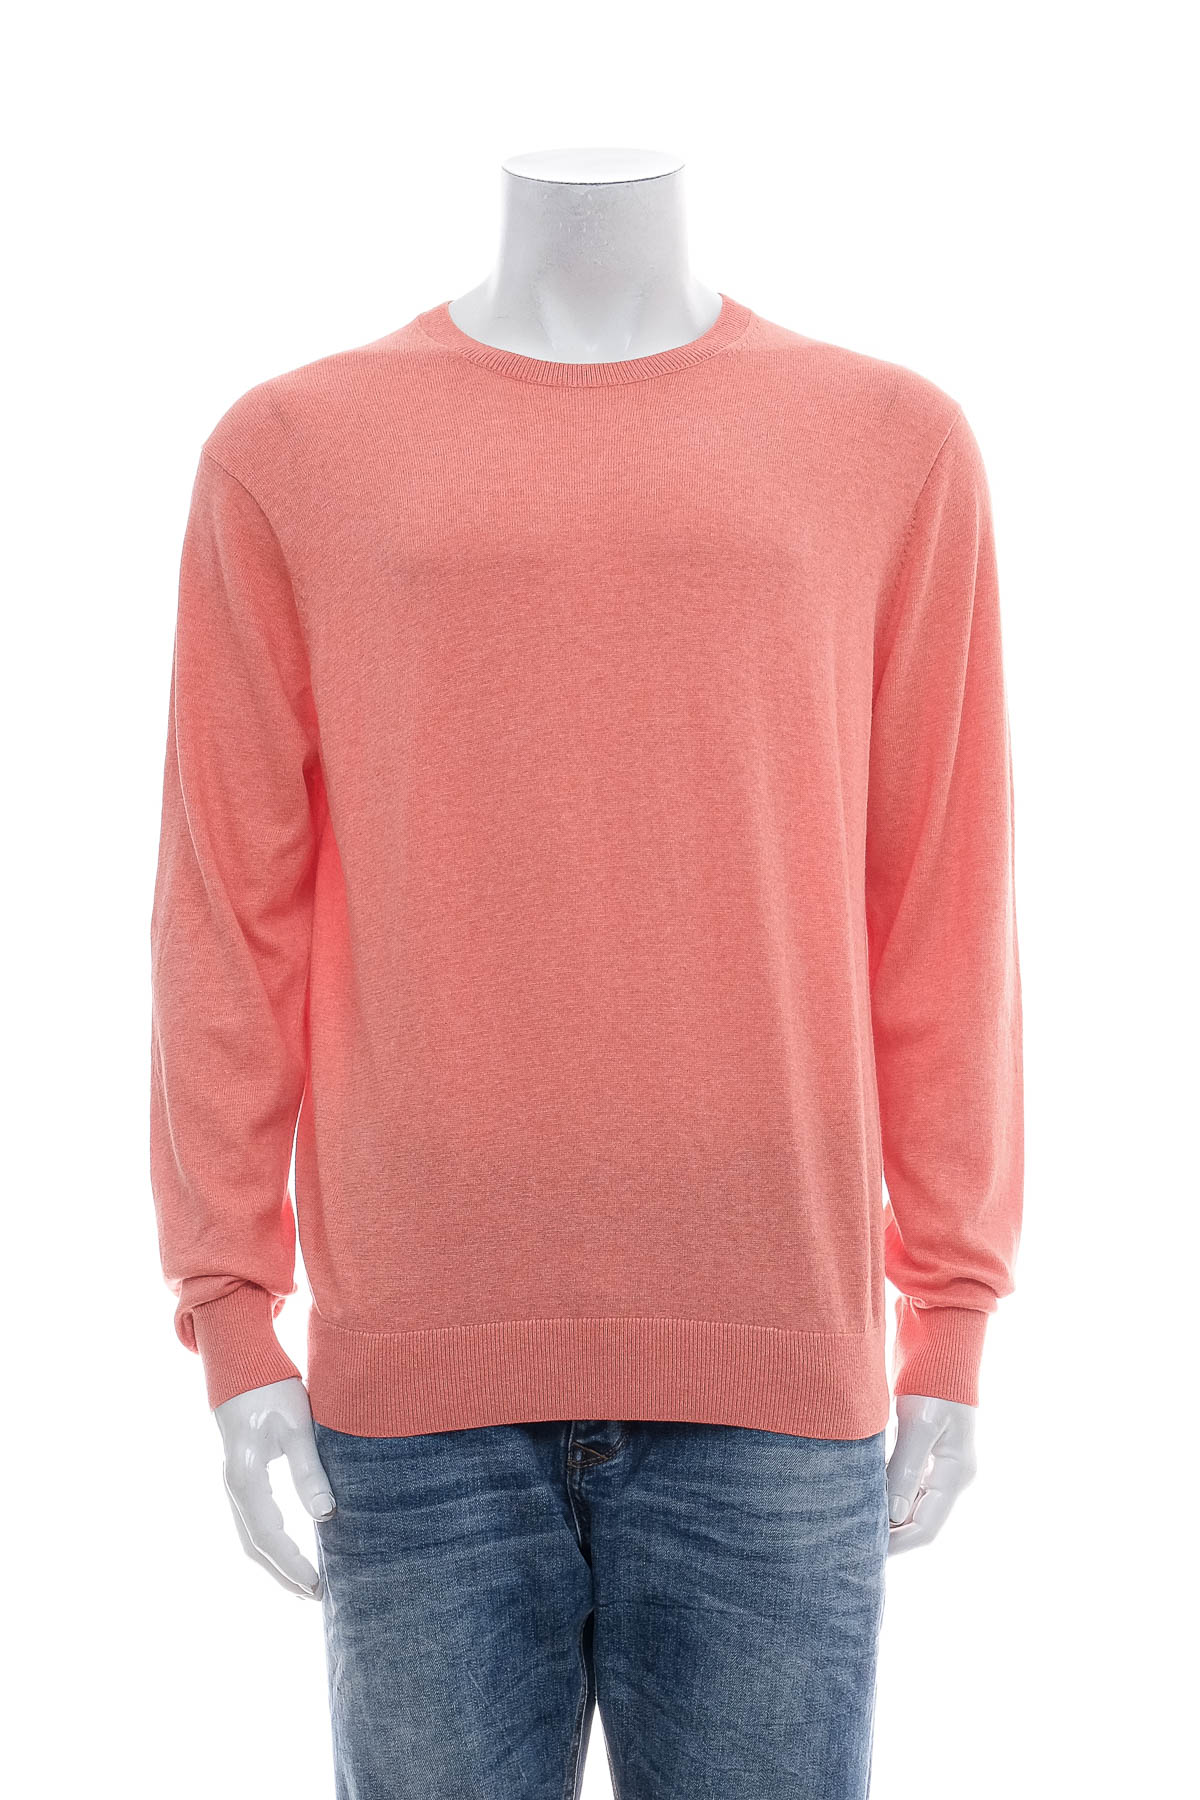 Men's sweater - UNIQLO - 0